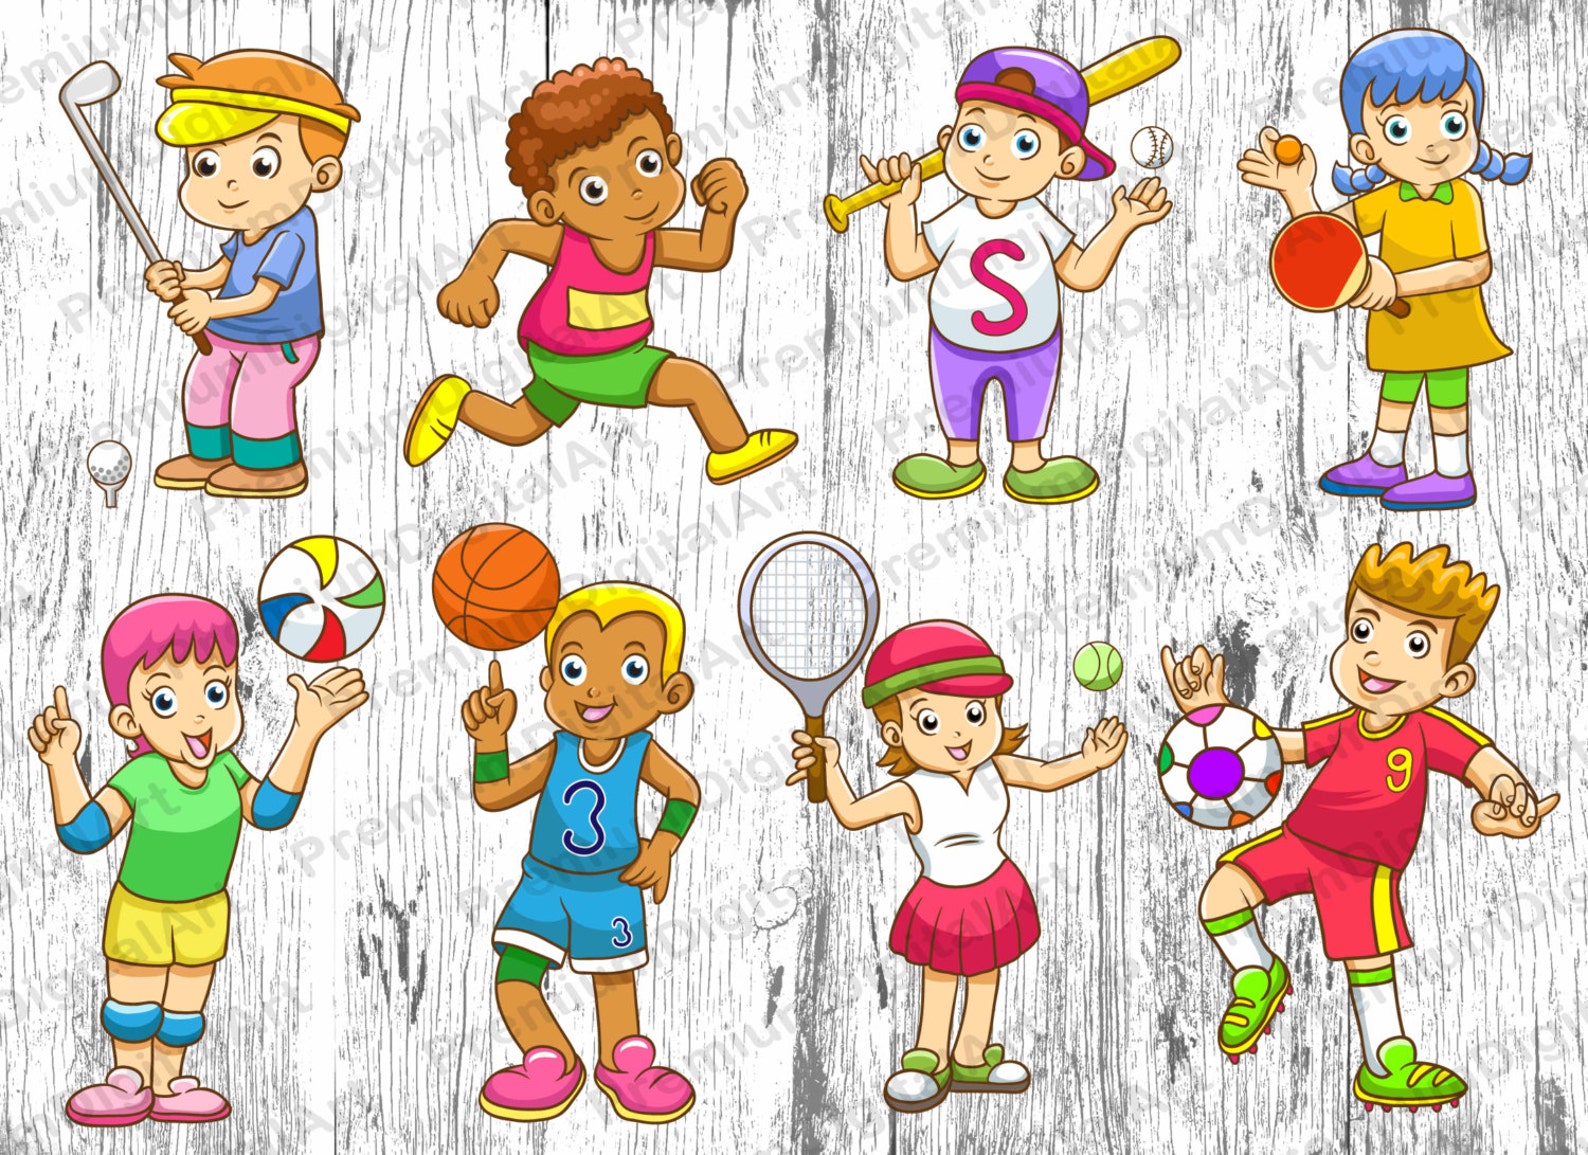 Игры занимайся спортом. Занятие спортом рисунок для детей. Спортивные рисунки для детей. Иллюстрации спортсменов для детей. Спортивные картинки для дошкольников.